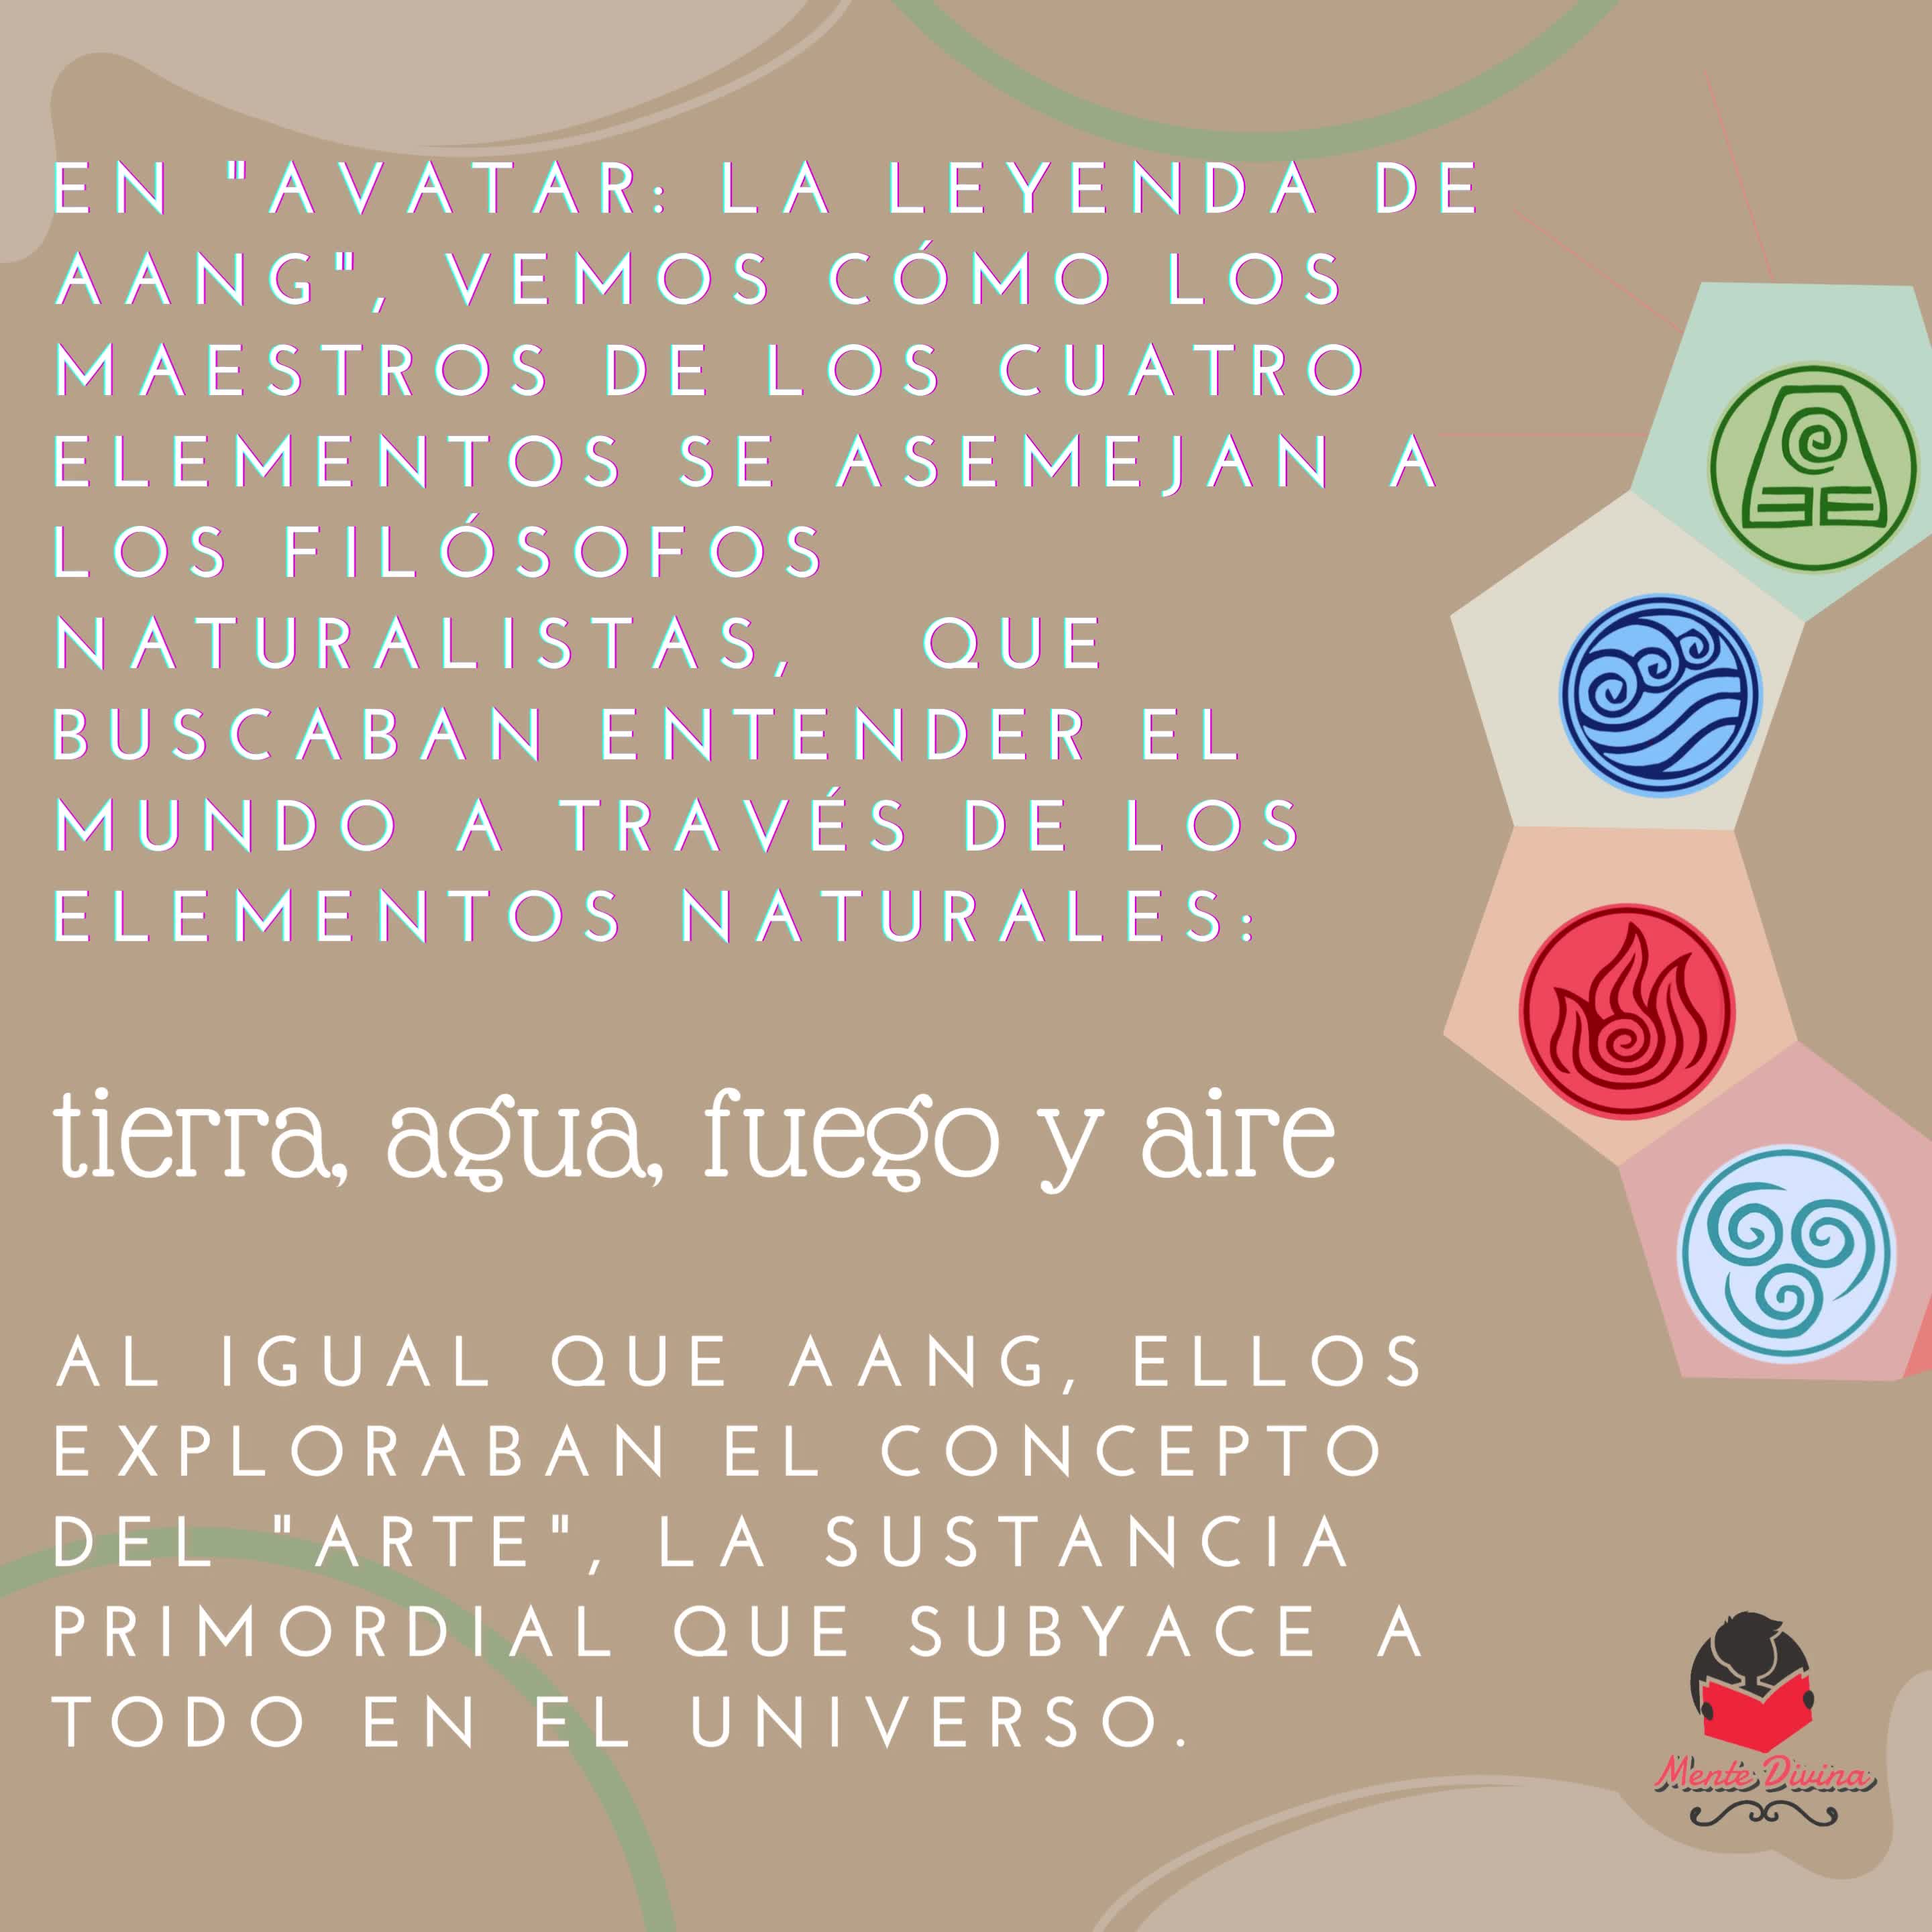 "Descubriendo el Arje: Filosofía Naturalista en Avatar" 